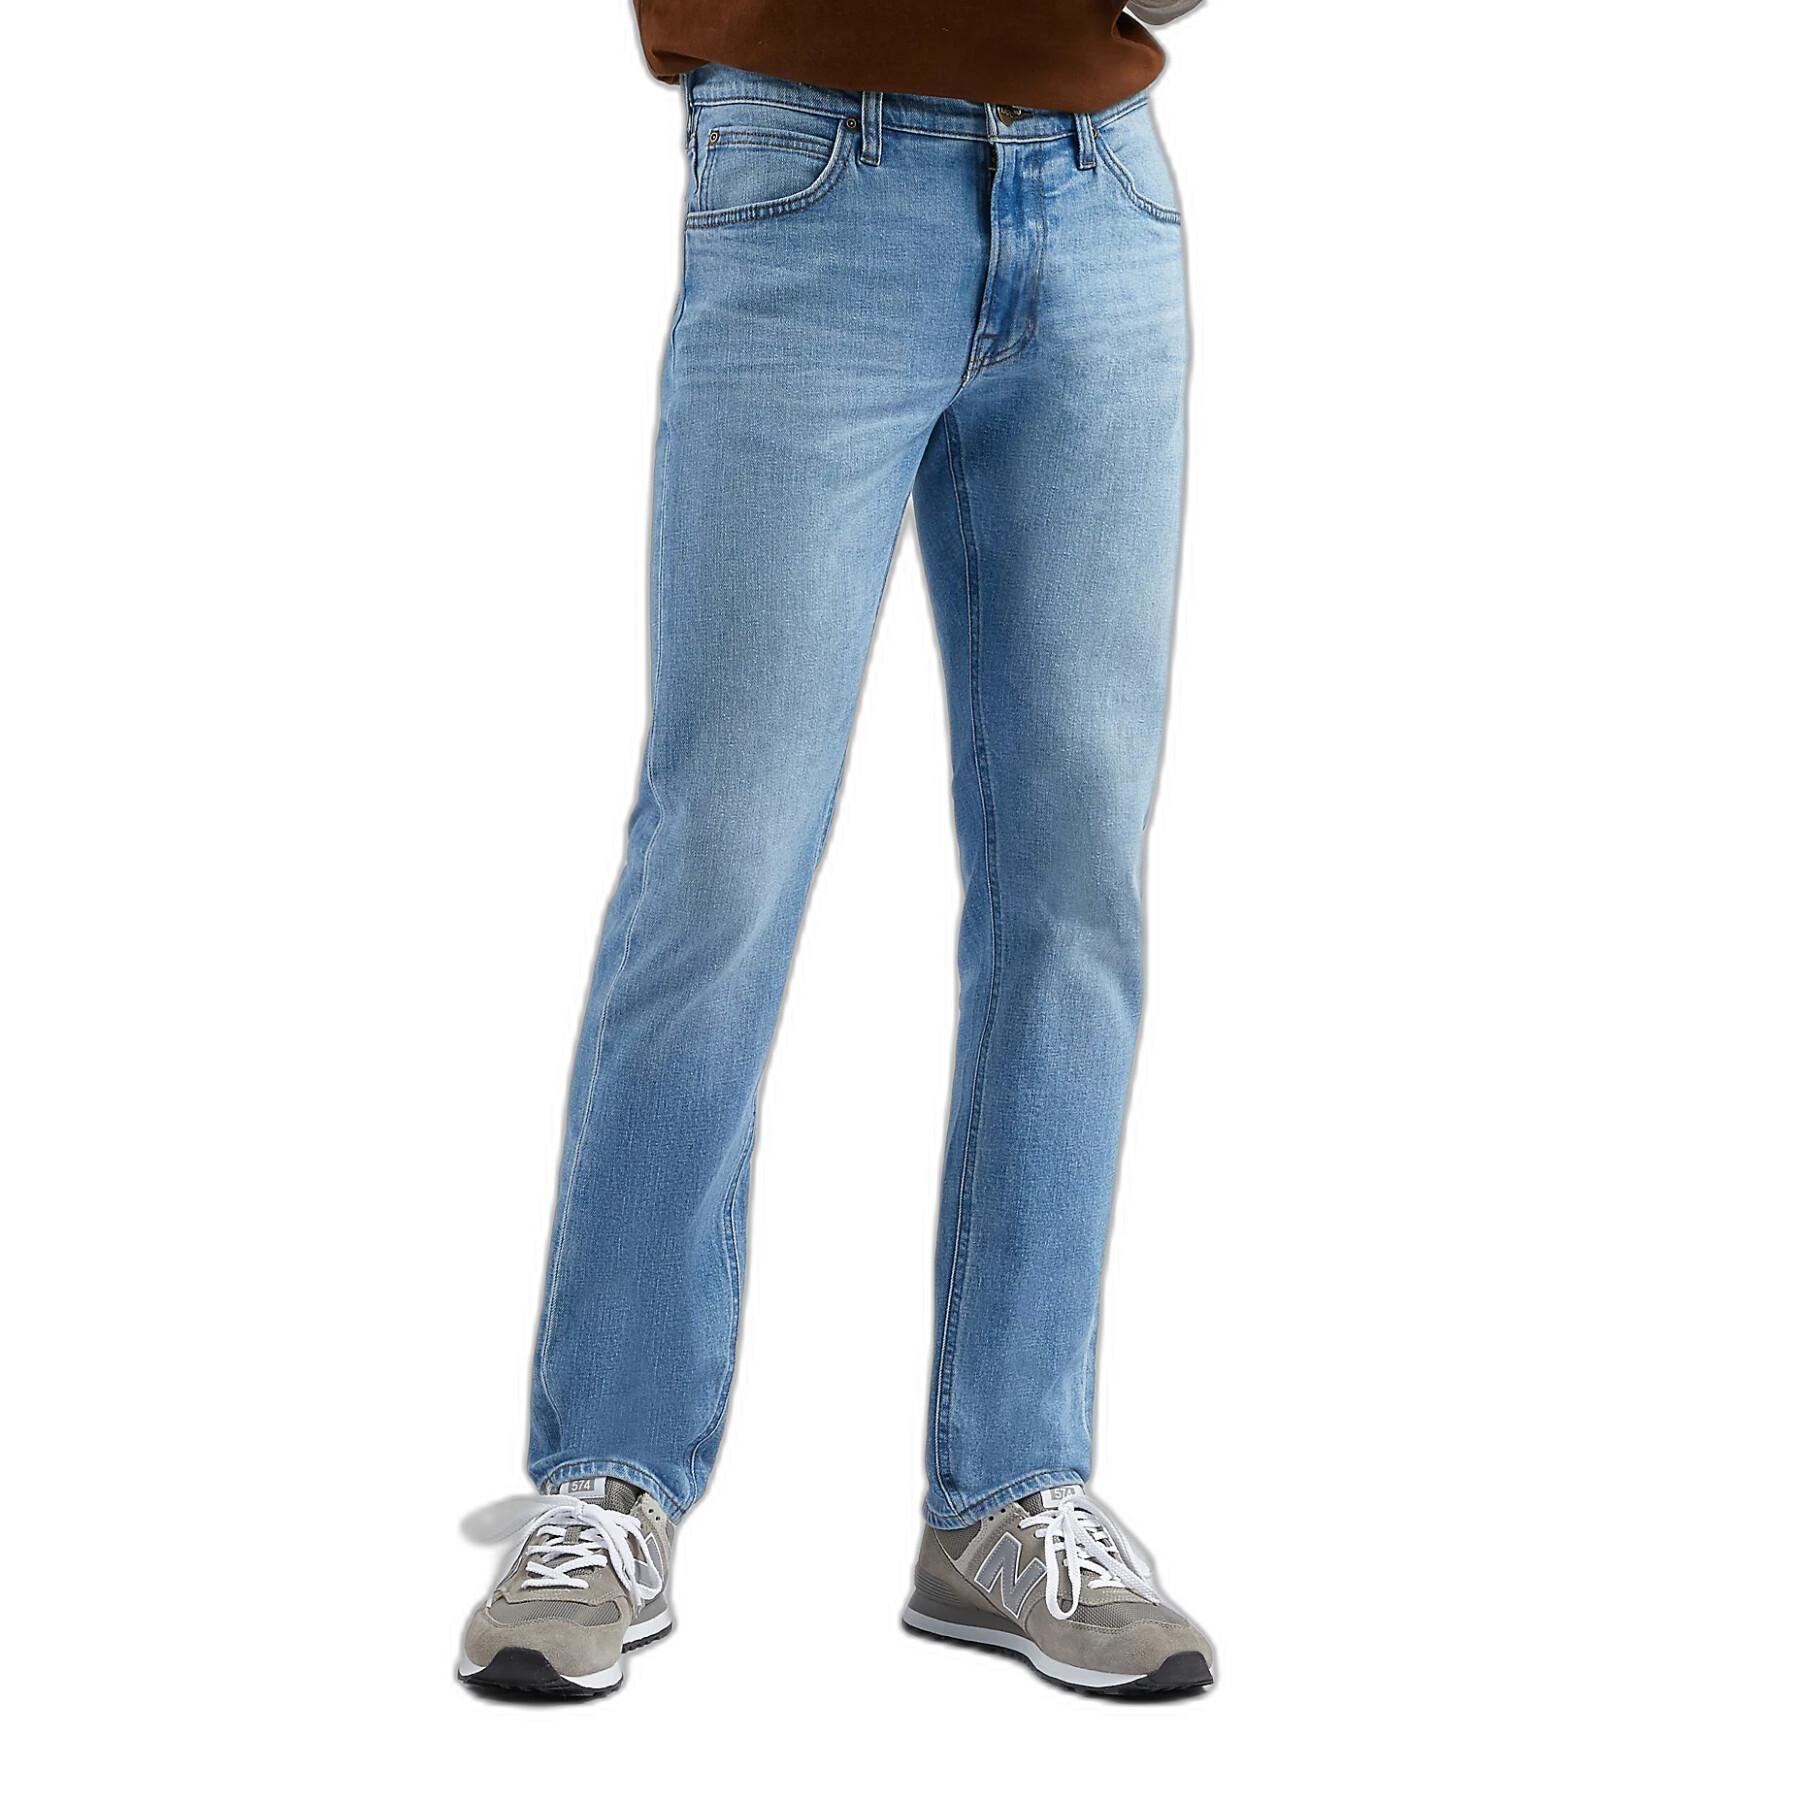 Jeans mit Reißverschluss Lee Daren Fly